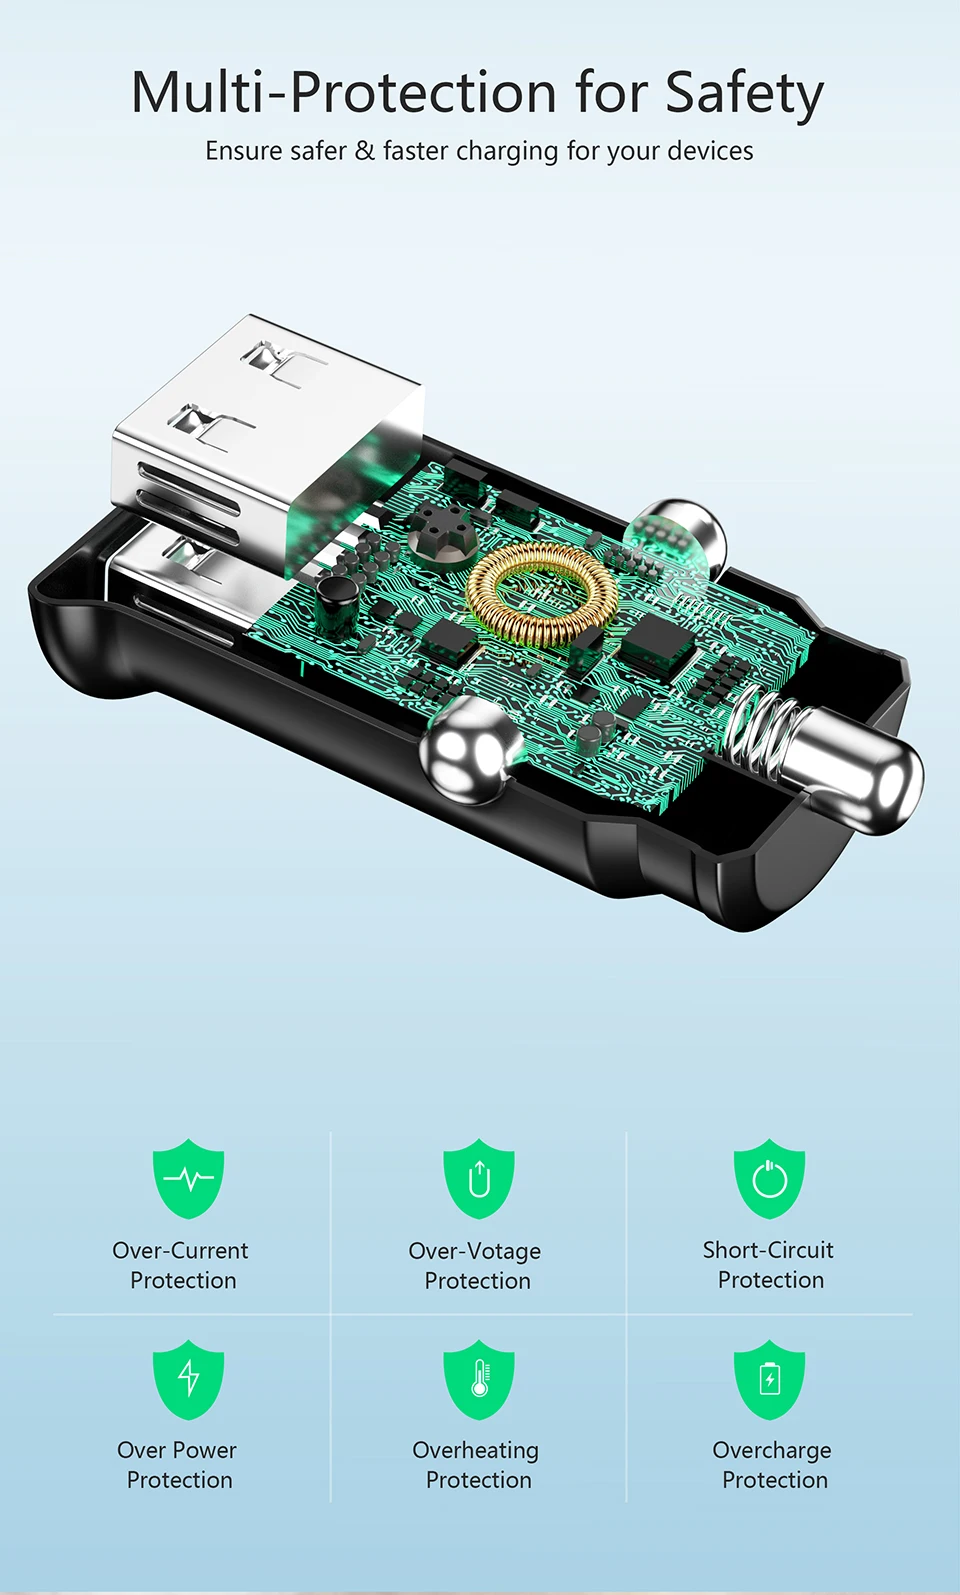 MANTIS USB Автомобильное зарядное устройство 4.8A Мини Автомобильный Адаптер зарядного устройства для телефона в автомобиле для samsung S10 Plus Xiaomi Redmi Note 7 iPhone 11 XR XS 8